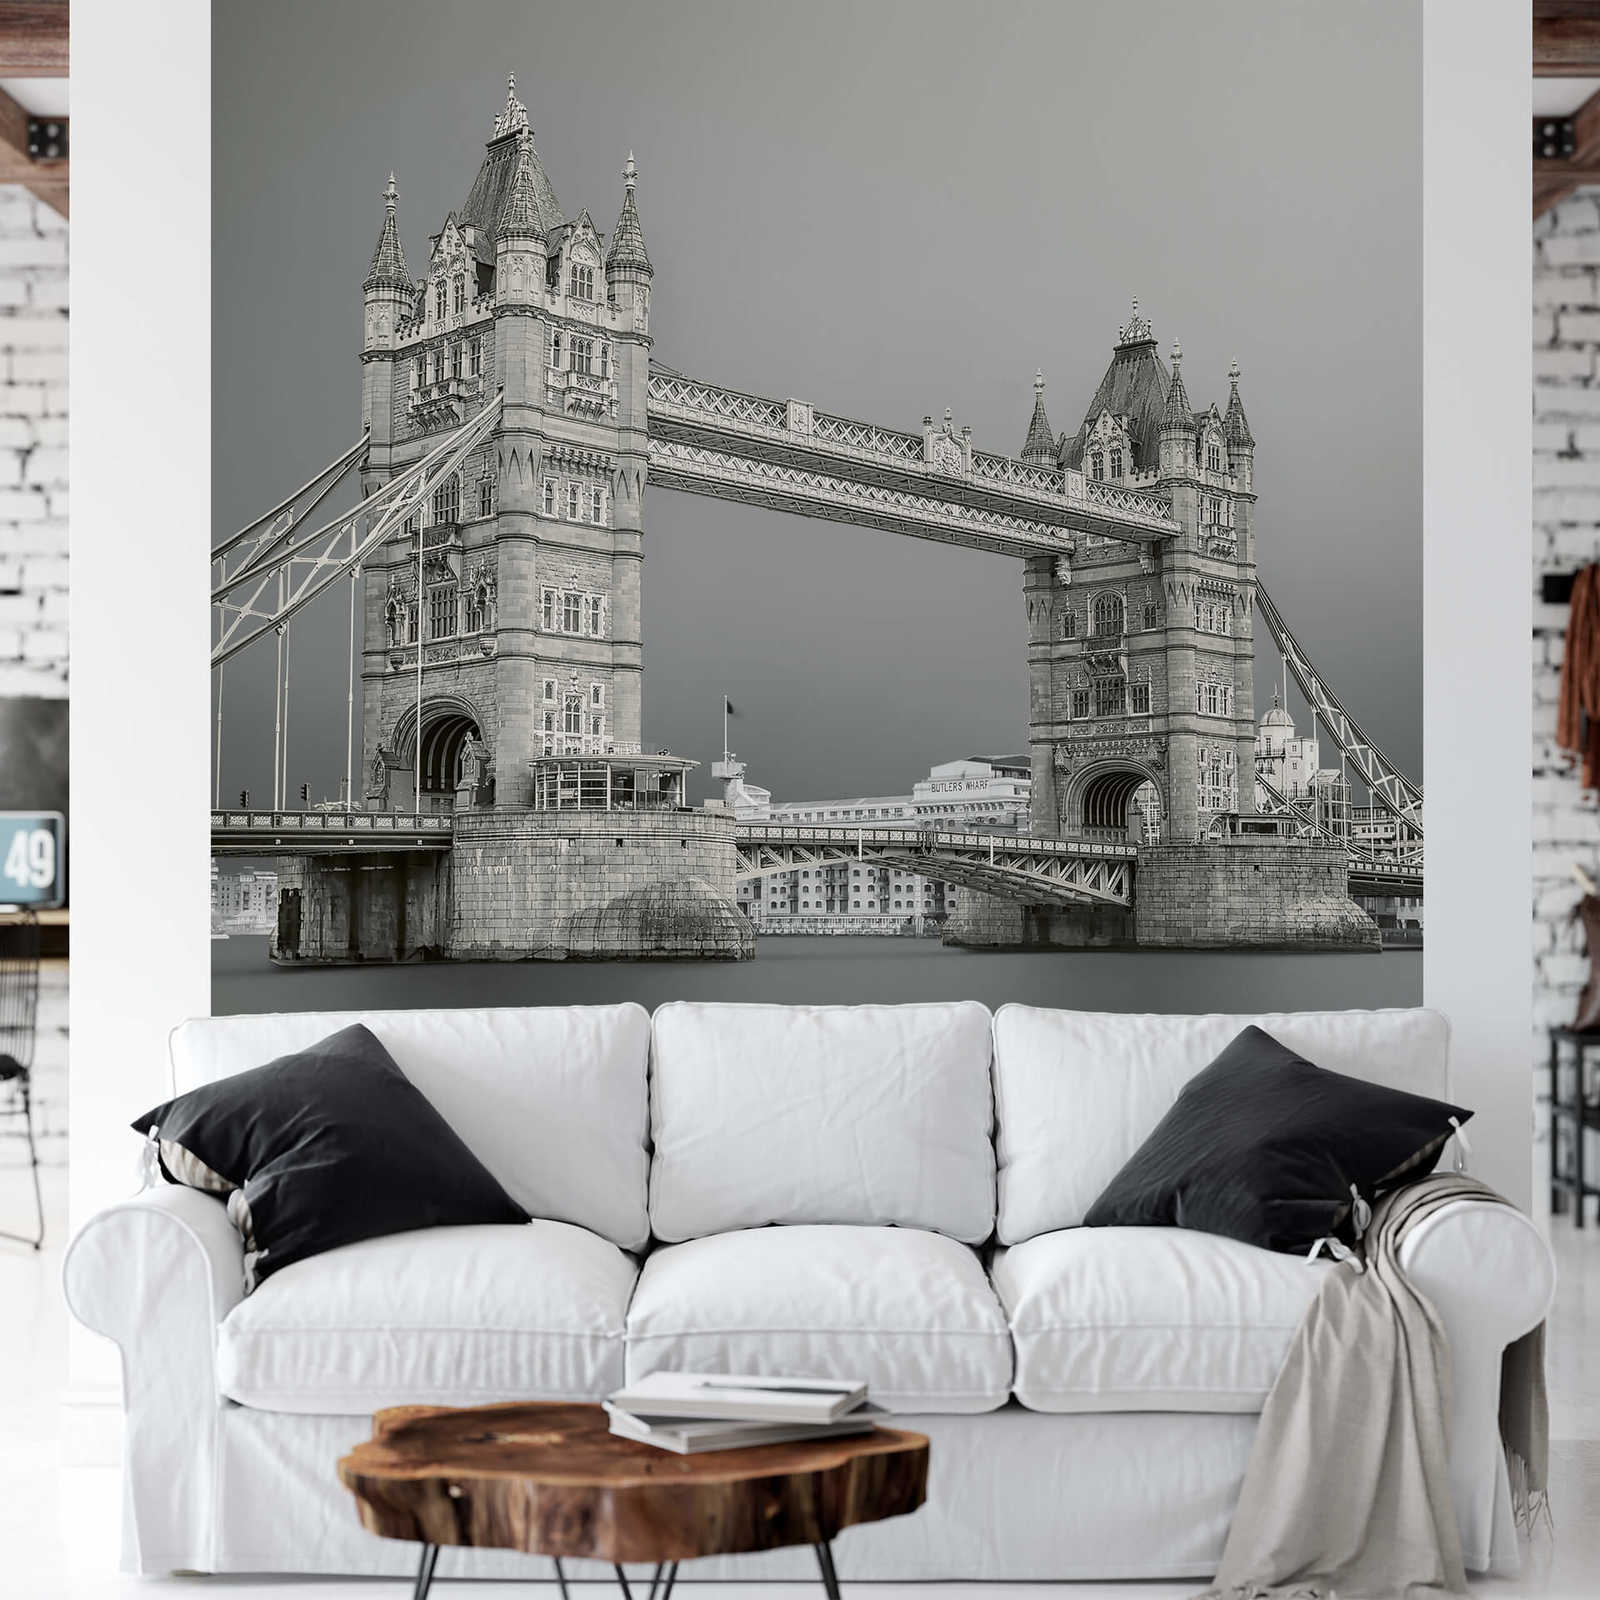             Muurschildering Londen Tower Bridge - Grijs, Wit, Zwart
        